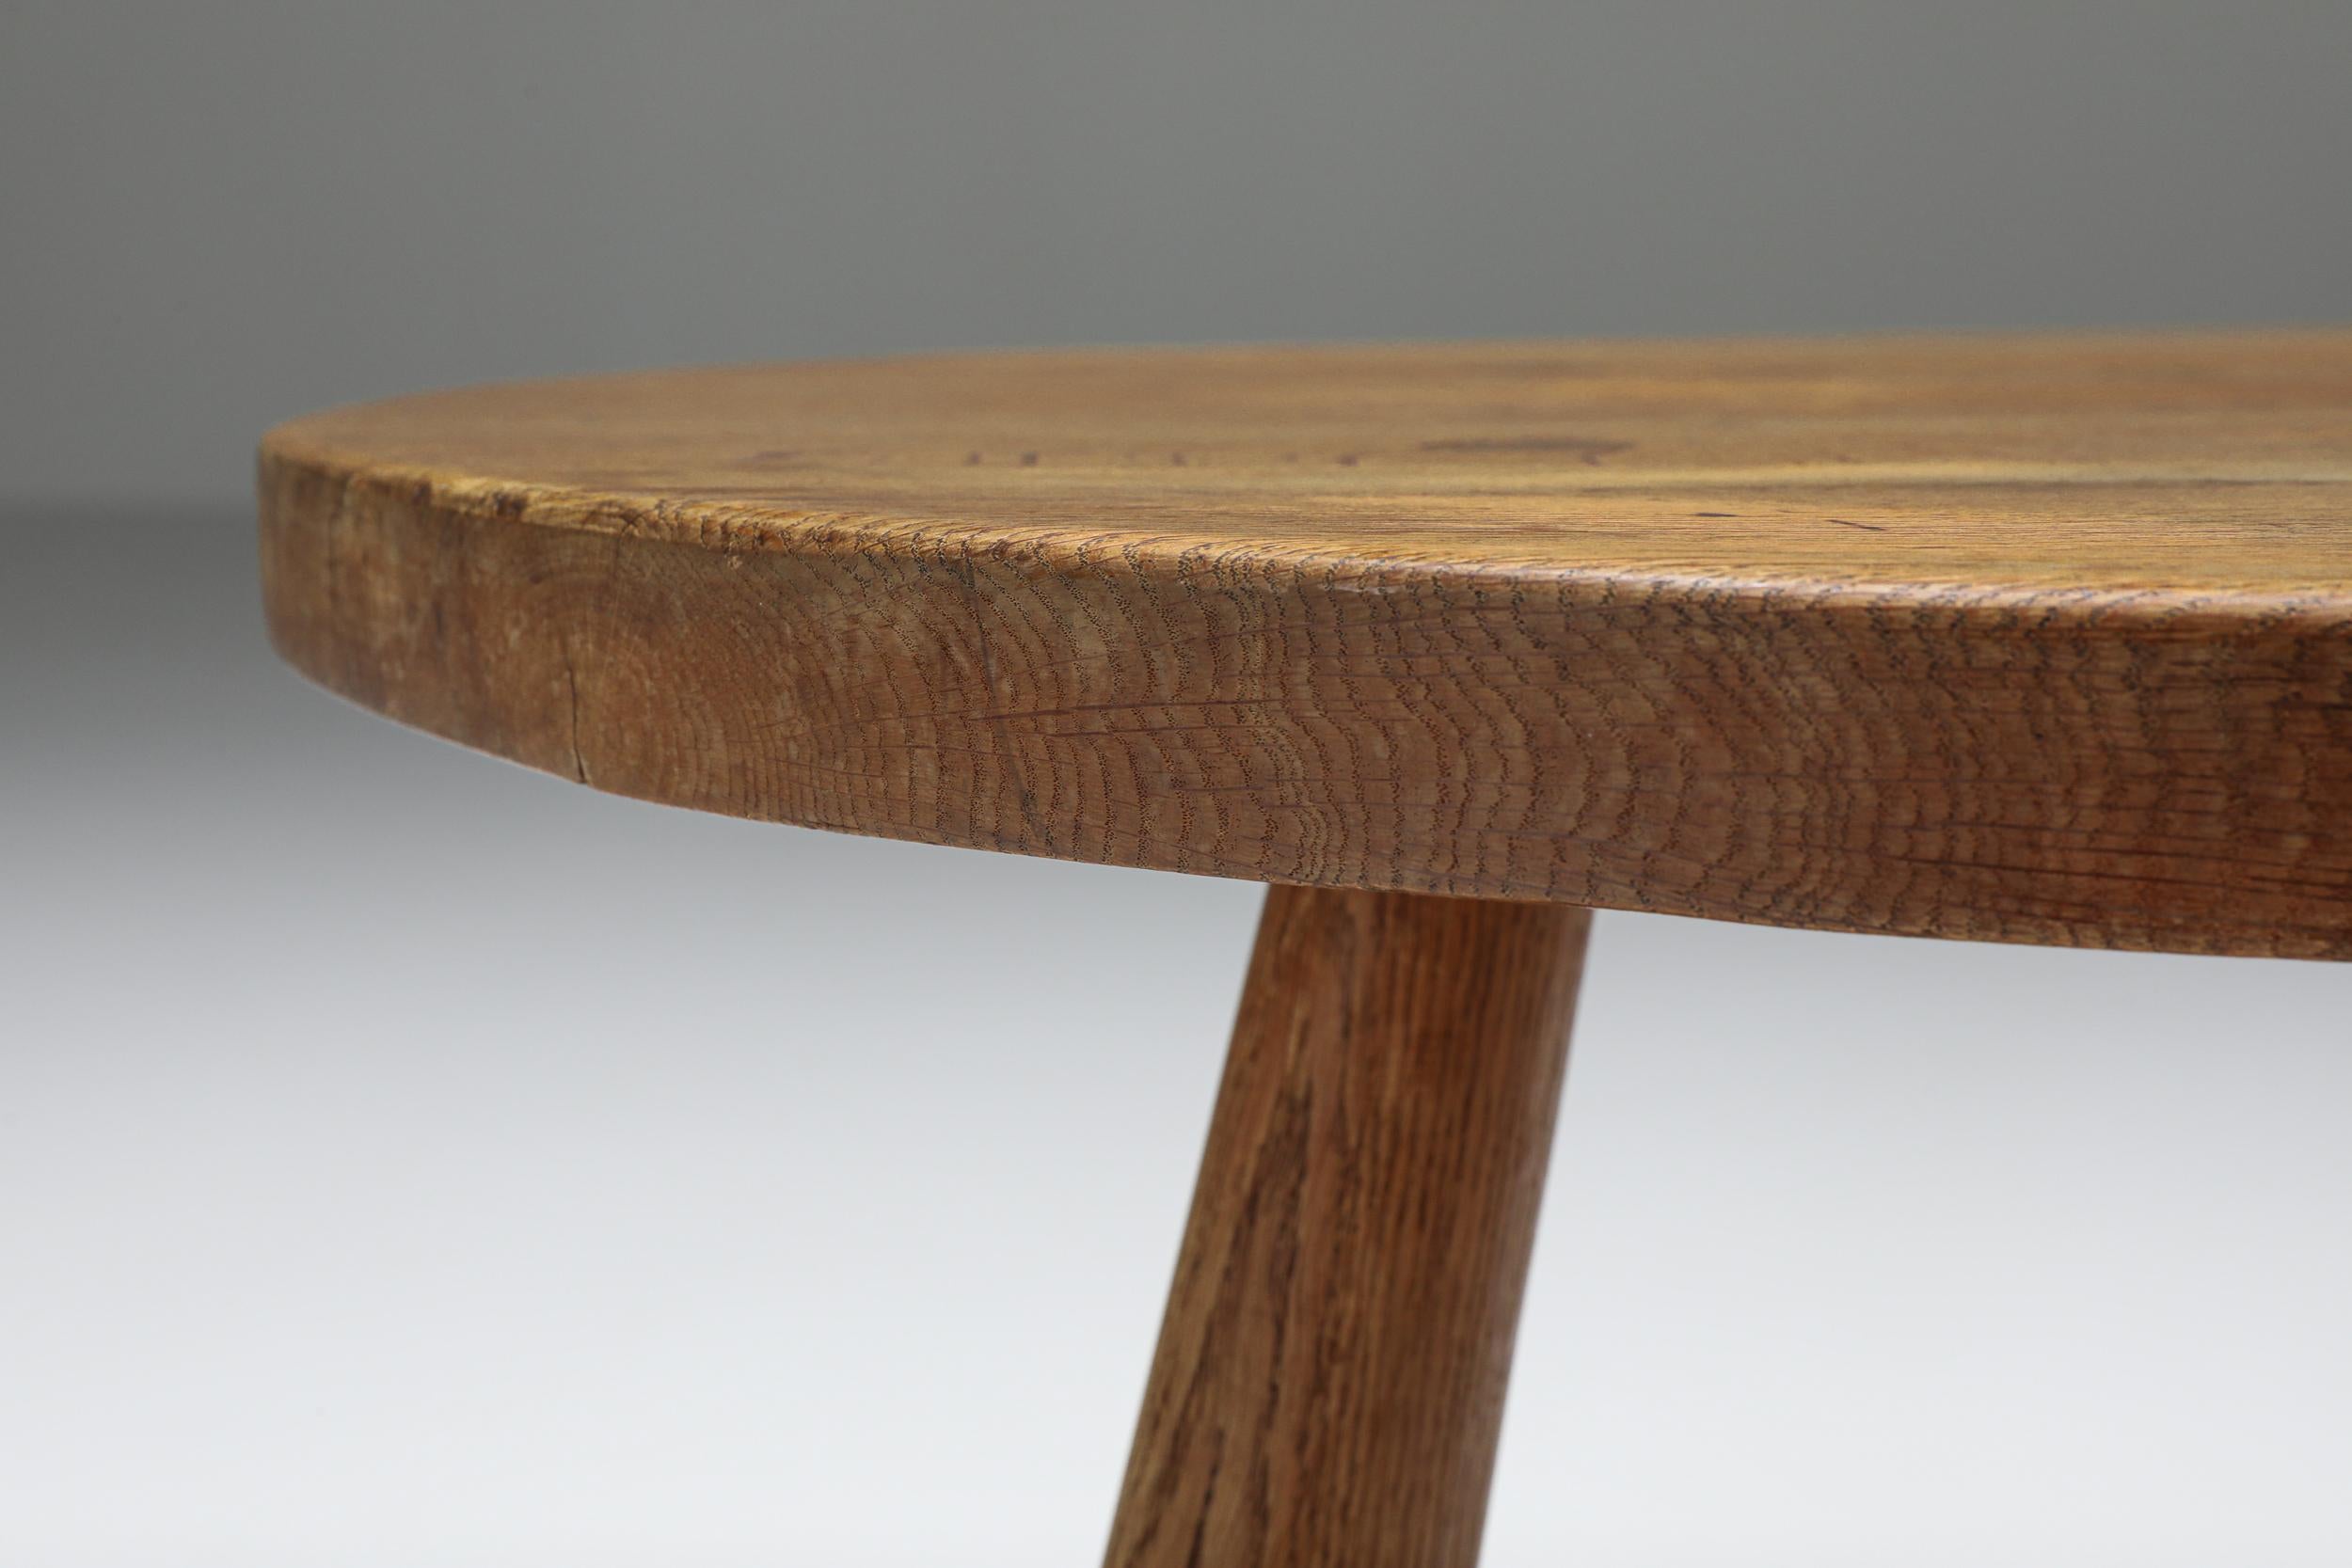 Wood Rustic Round Coffee Table, Mid-Century Modern, Minimalist, 1950's